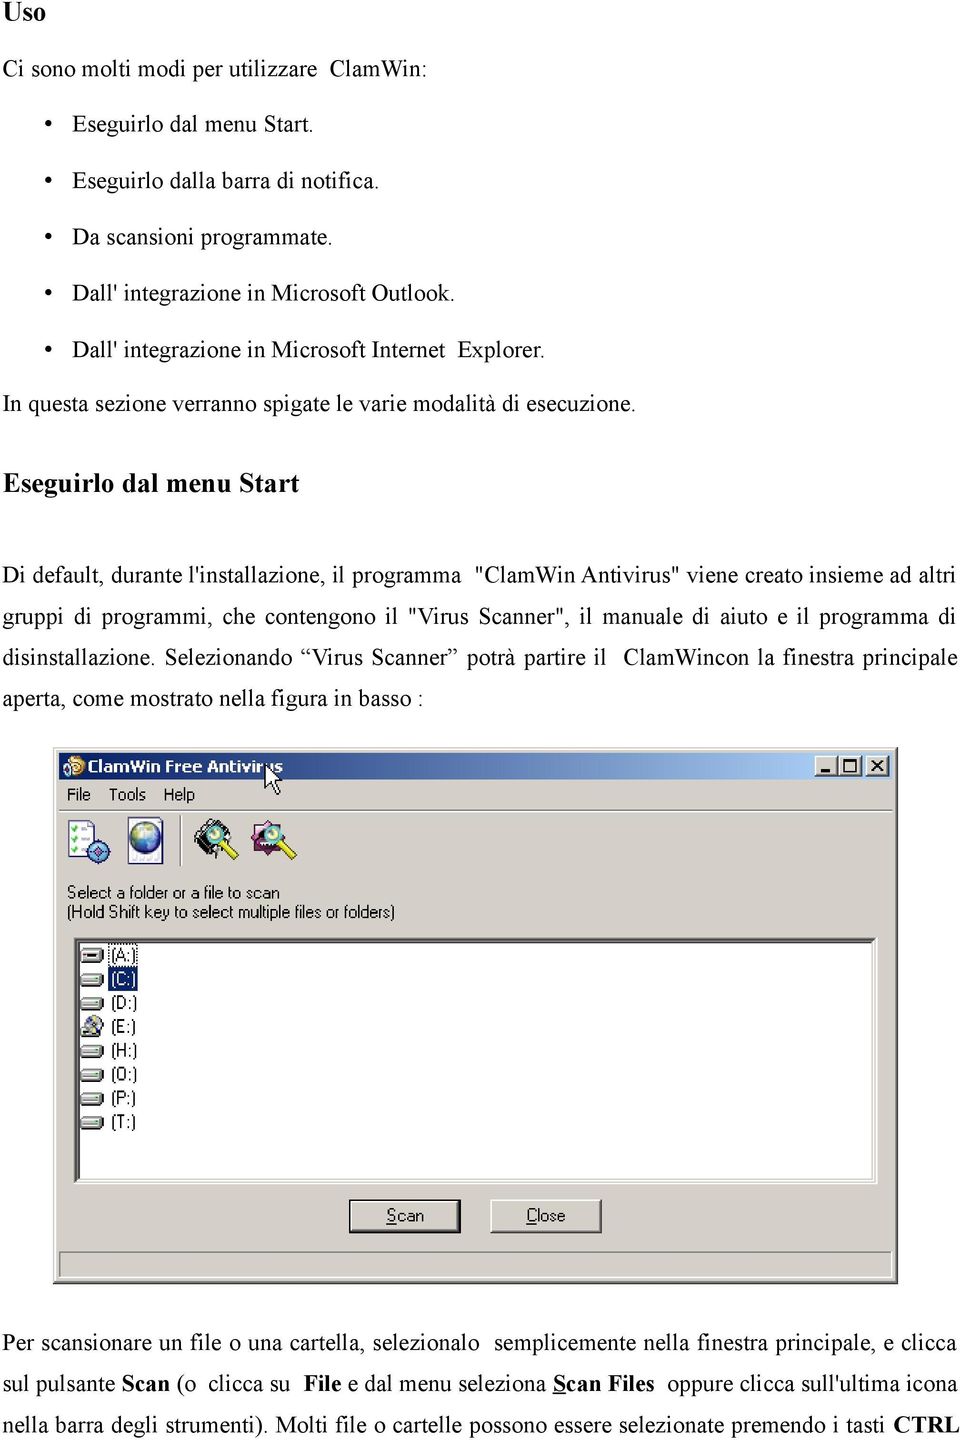 Eseguirlo dal menu Start Di default, durante l'installazione, il programma "ClamWin Antivirus" viene creato insieme ad altri gruppi di programmi, che contengono il "Virus Scanner", il manuale di